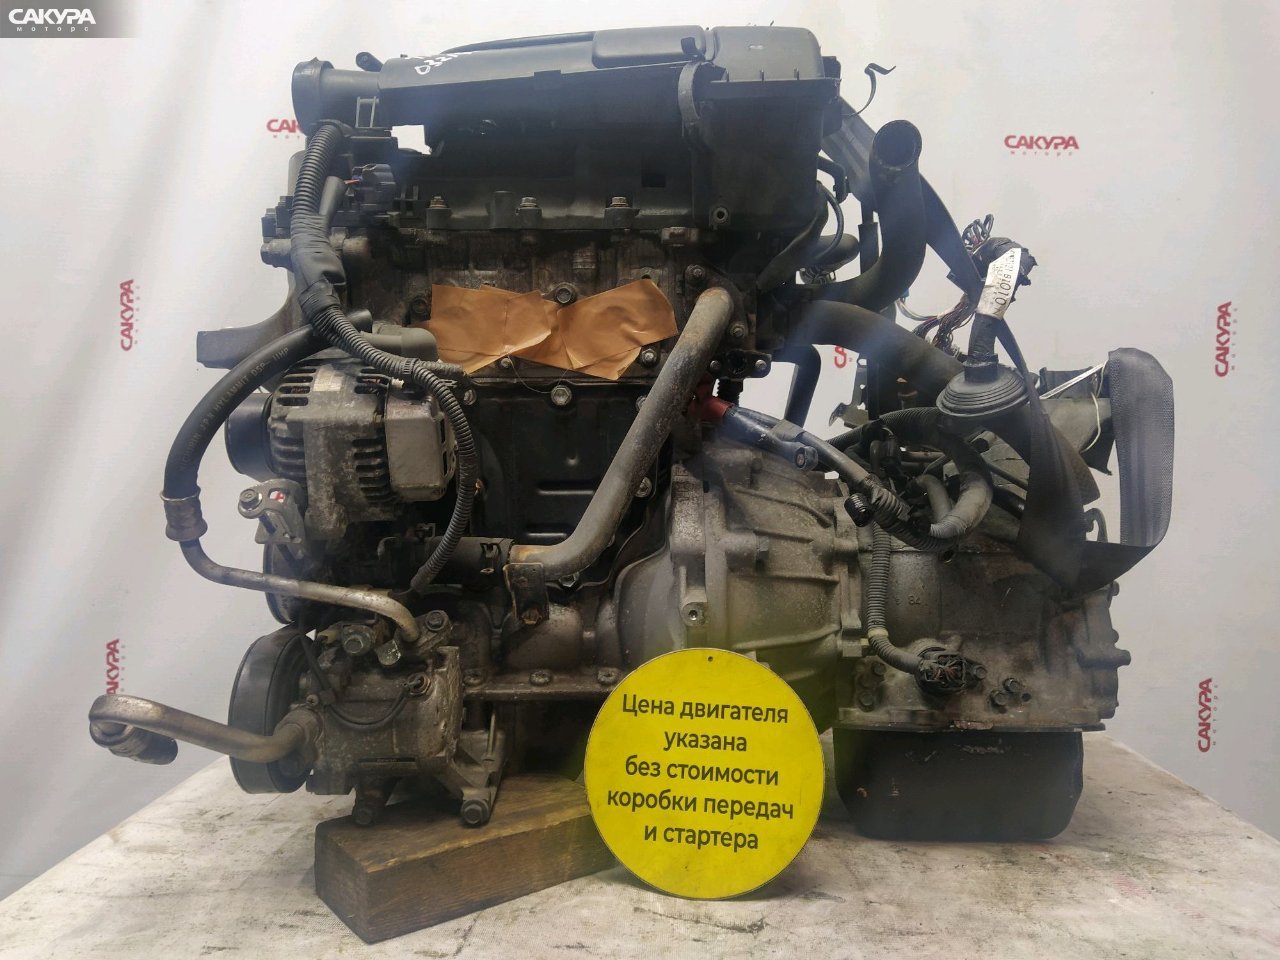 Двигатель Toyota Passo KGC10 1KR-FE: купить в Сакура Красноярск.